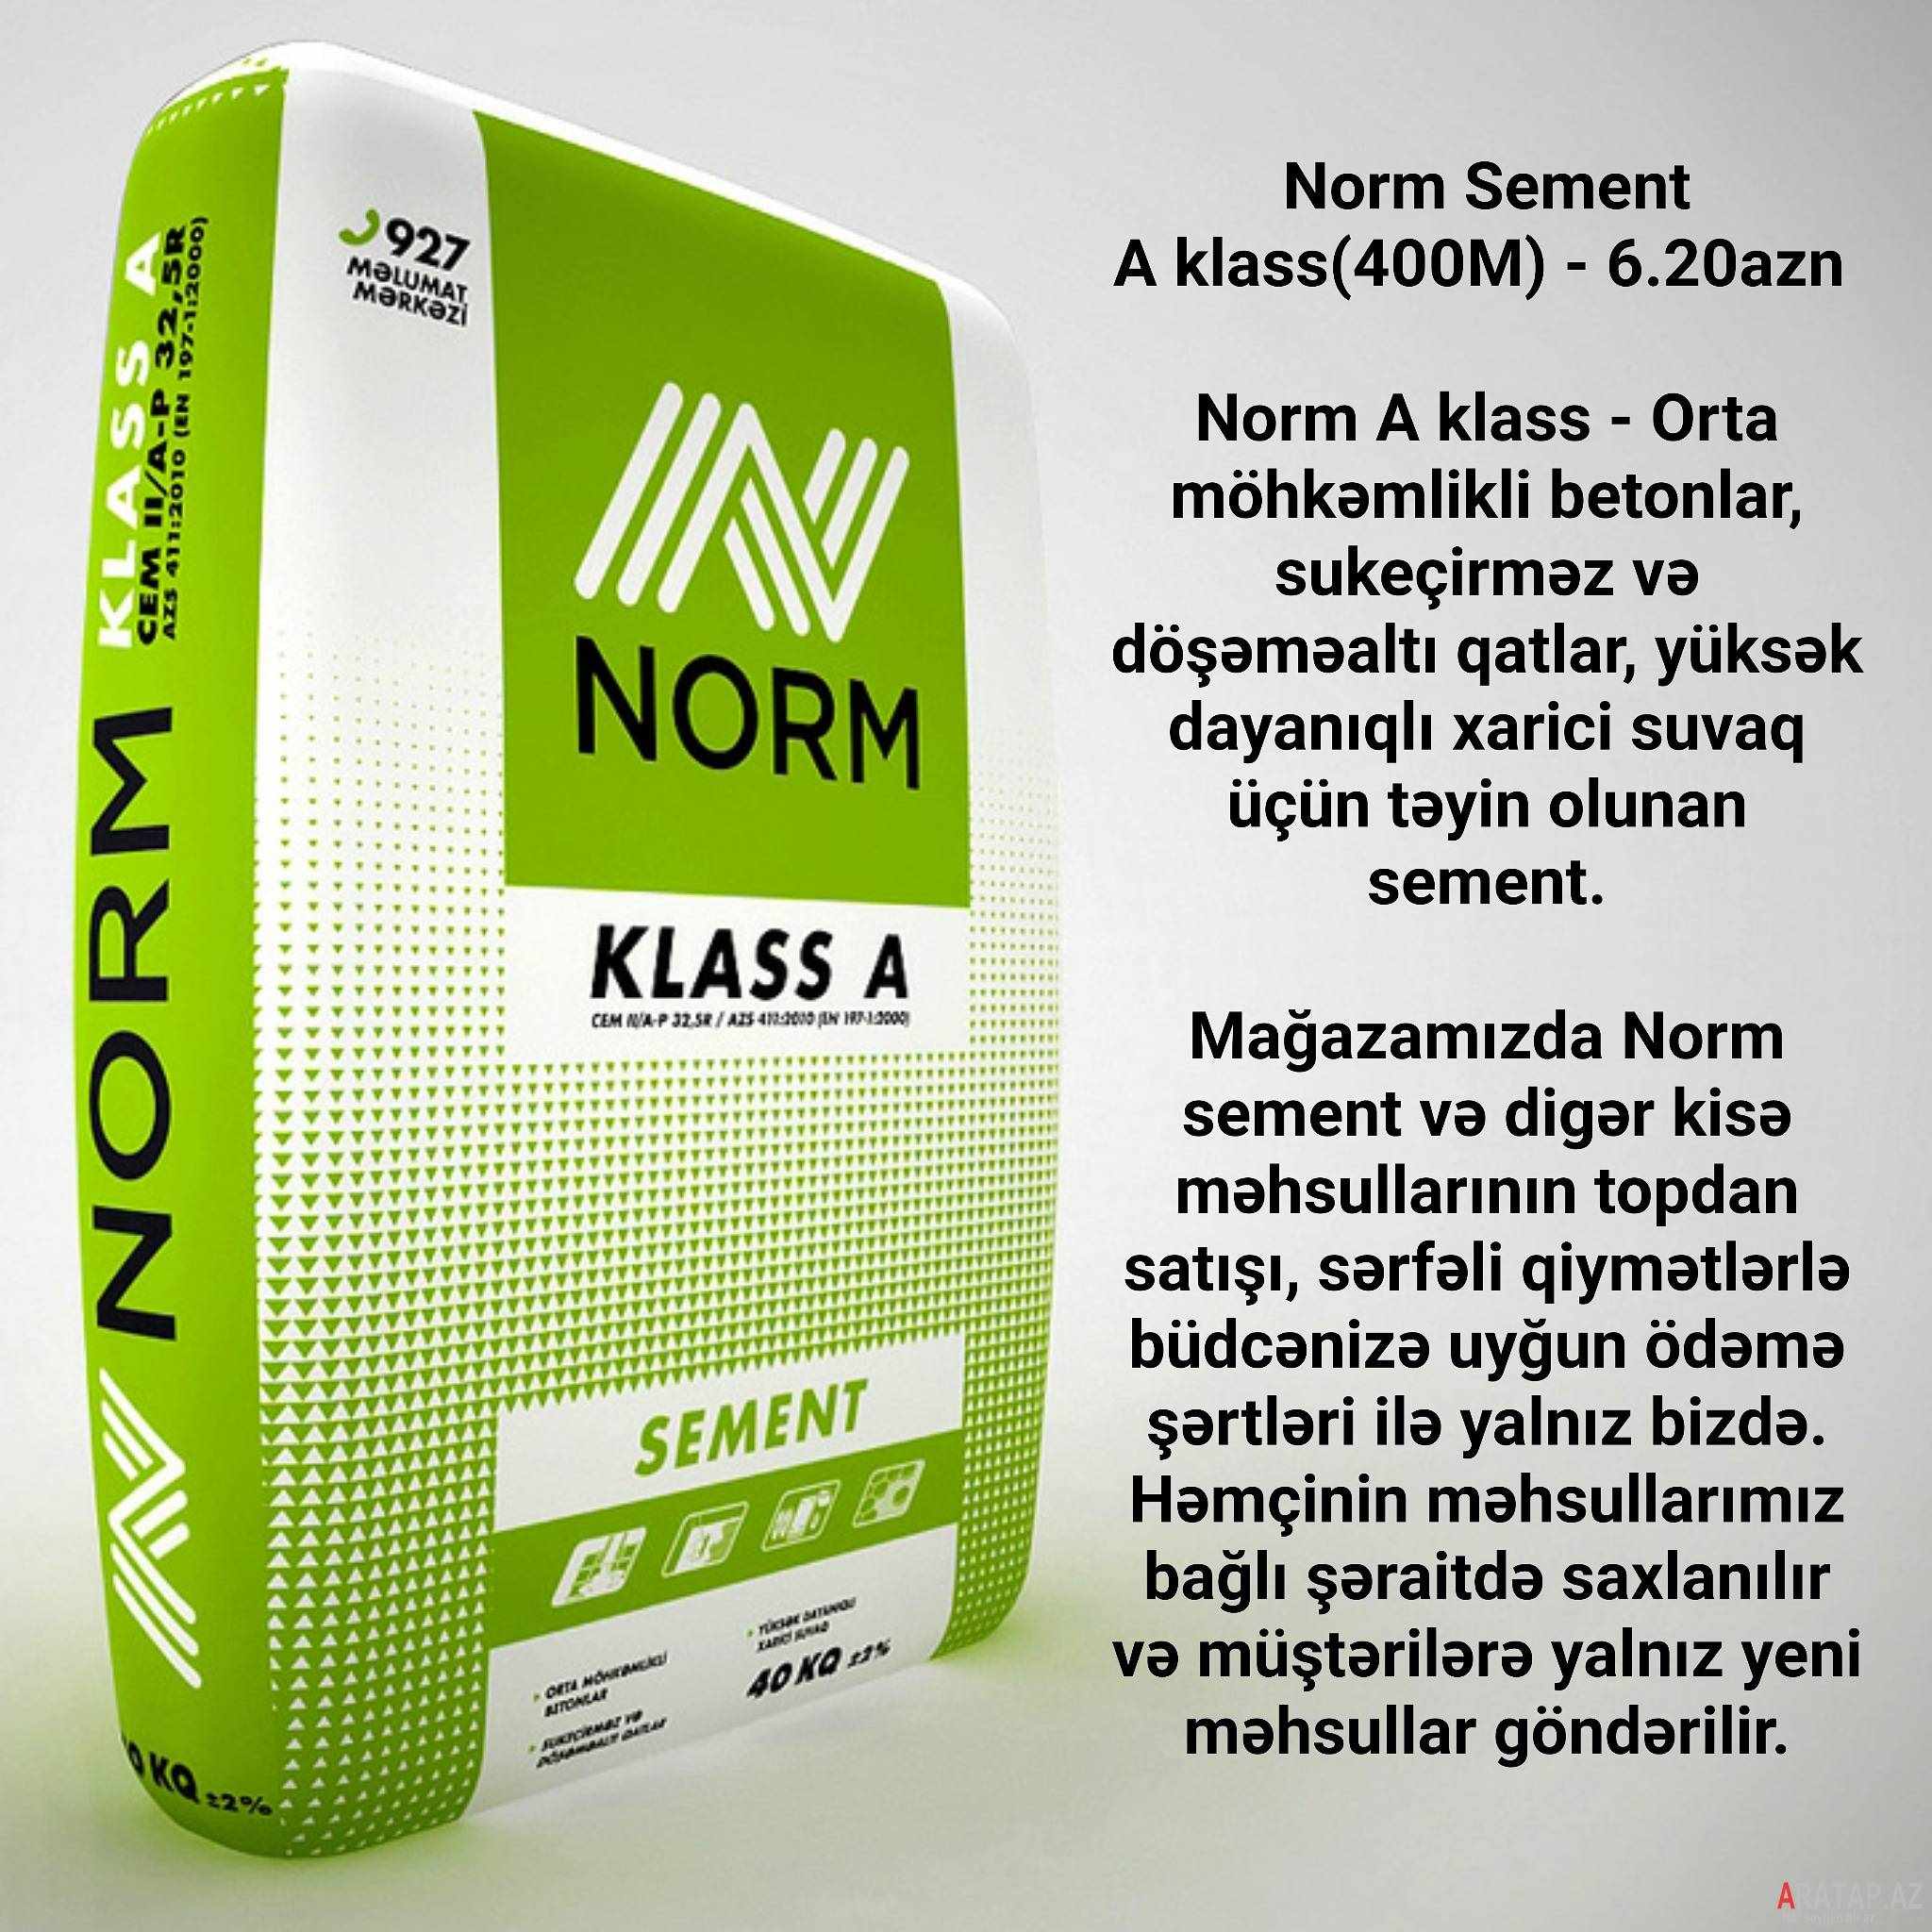 Norm Sement A klass(400M)